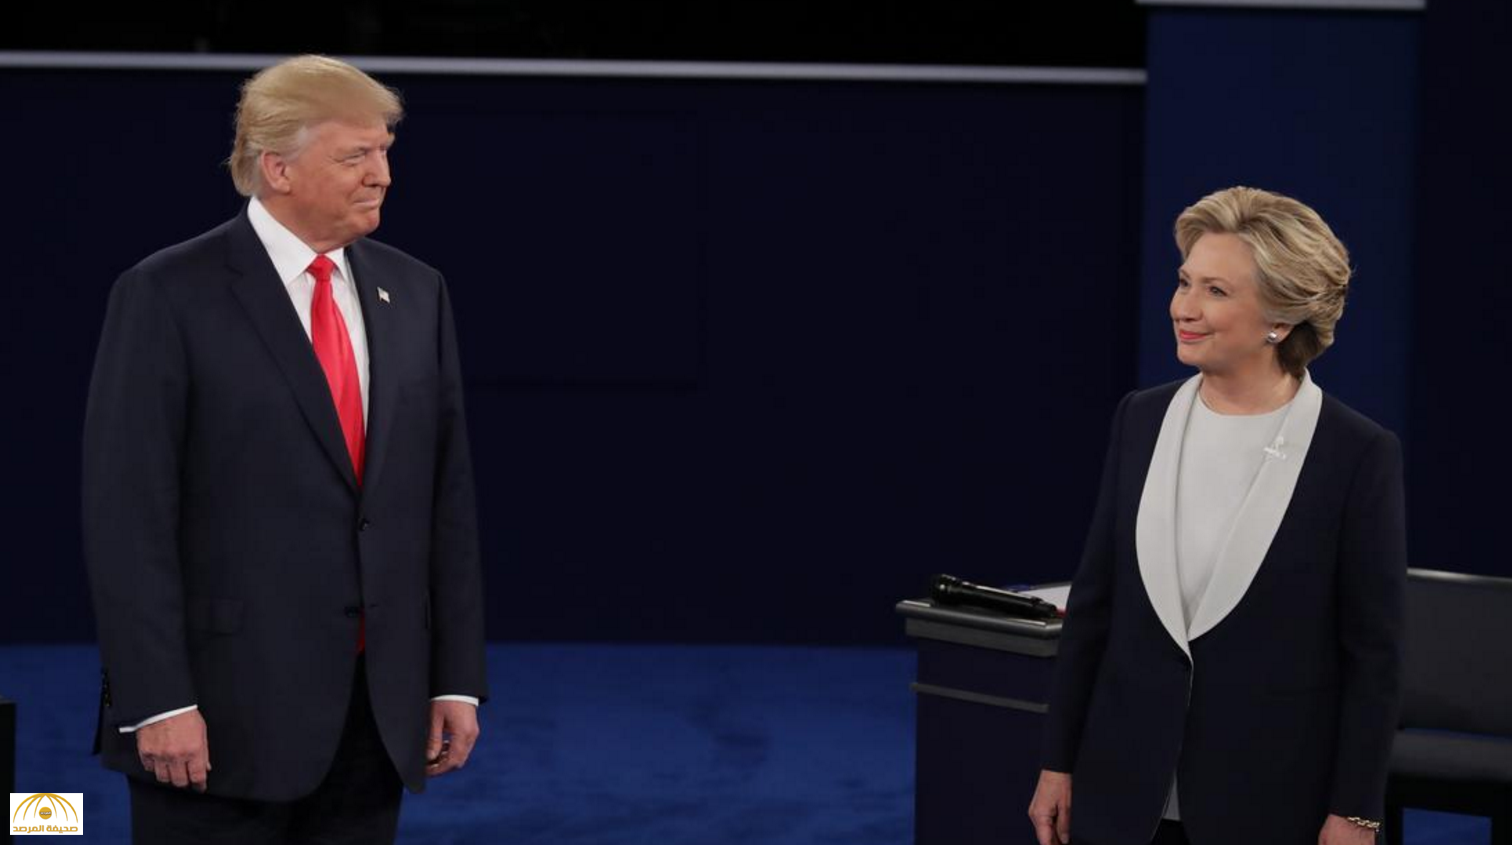 مناظرة على وقع "الفضائح الجنسية" أبرز ما جاء في ثاني المناظرات بين كلينتون وترامب